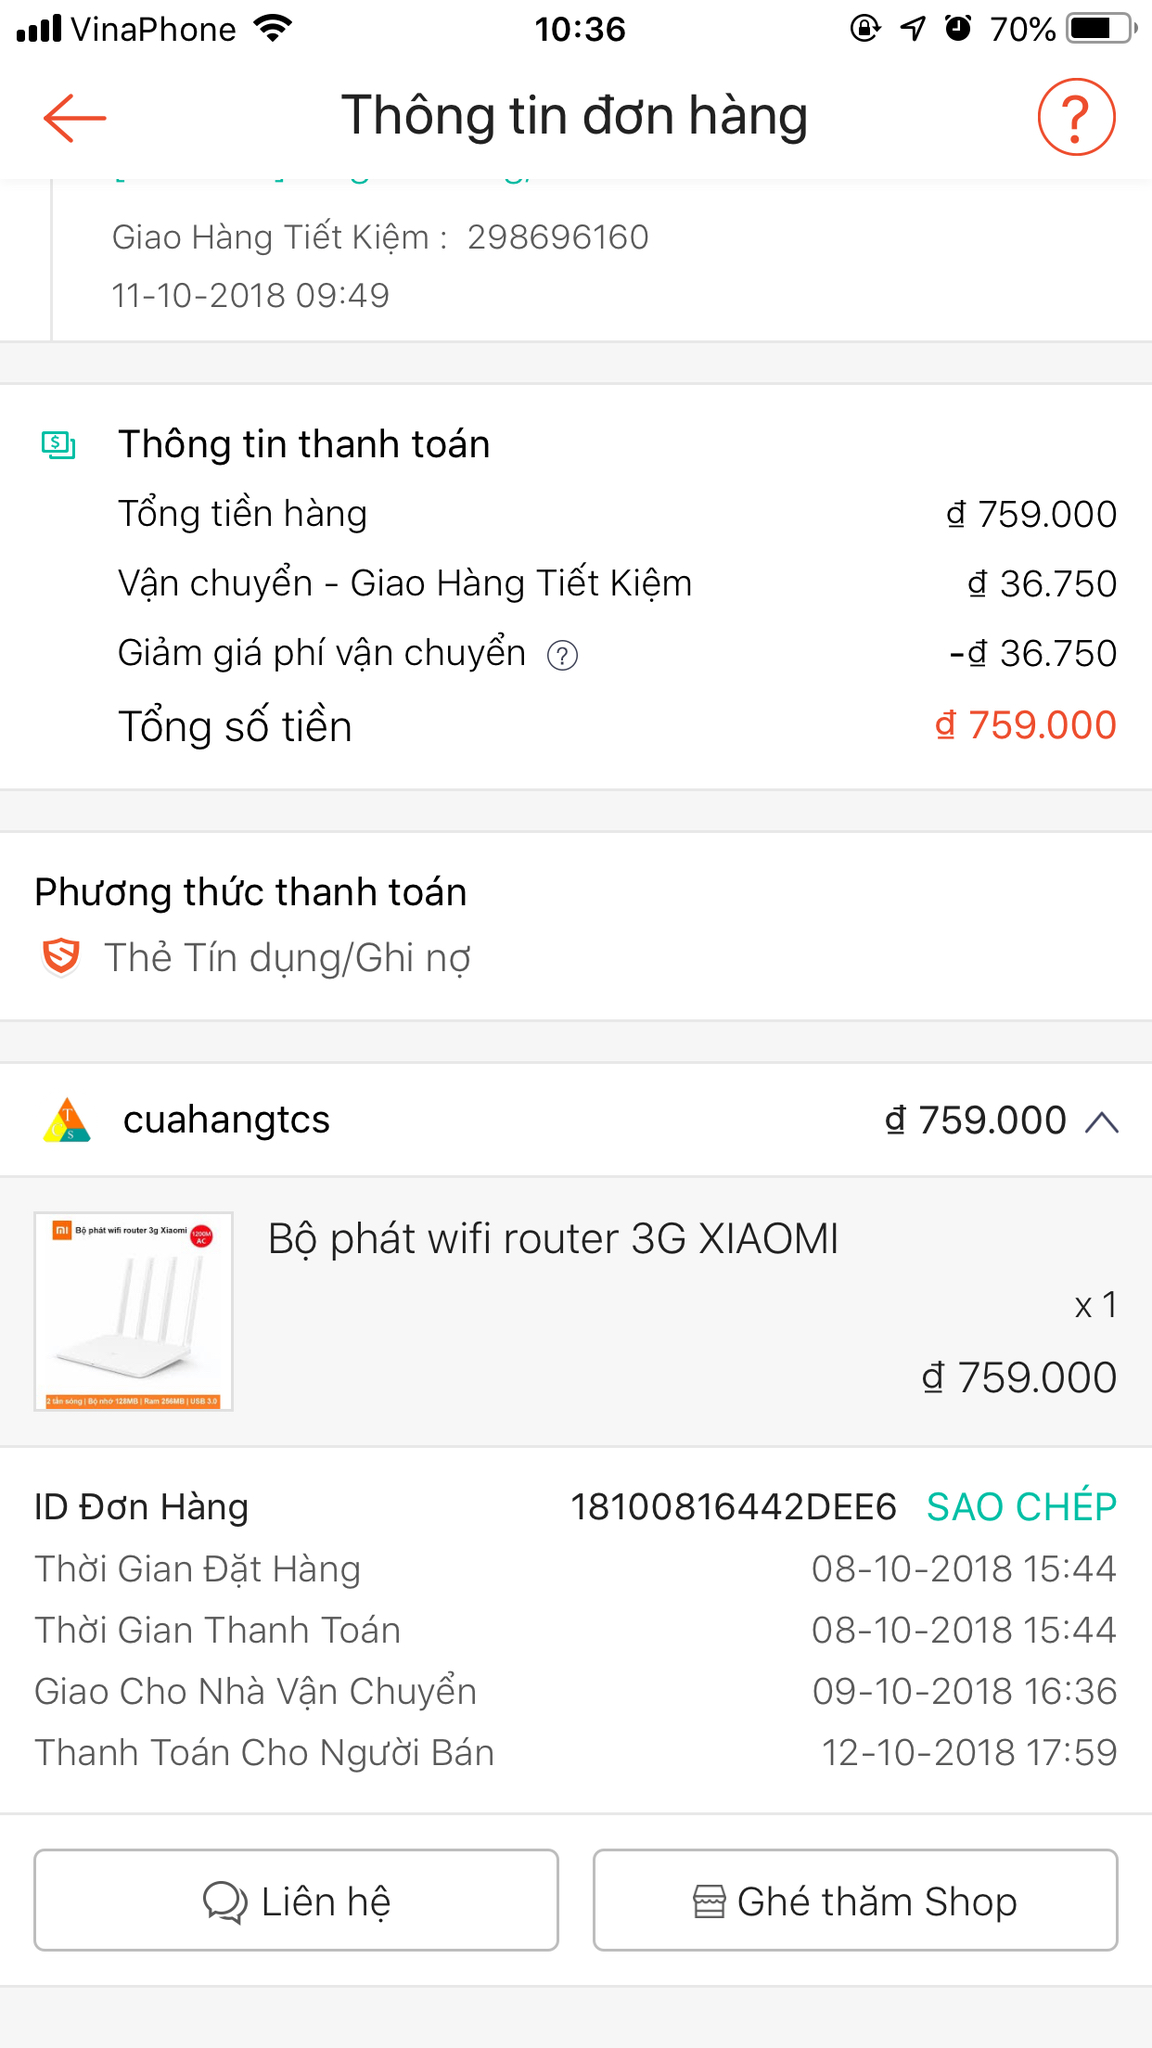 Mình đã từng mua rất nhiều sản phẩm Xiaomi của cuahangtcs.com nhưng hôm nay mới phải gọi vào số...